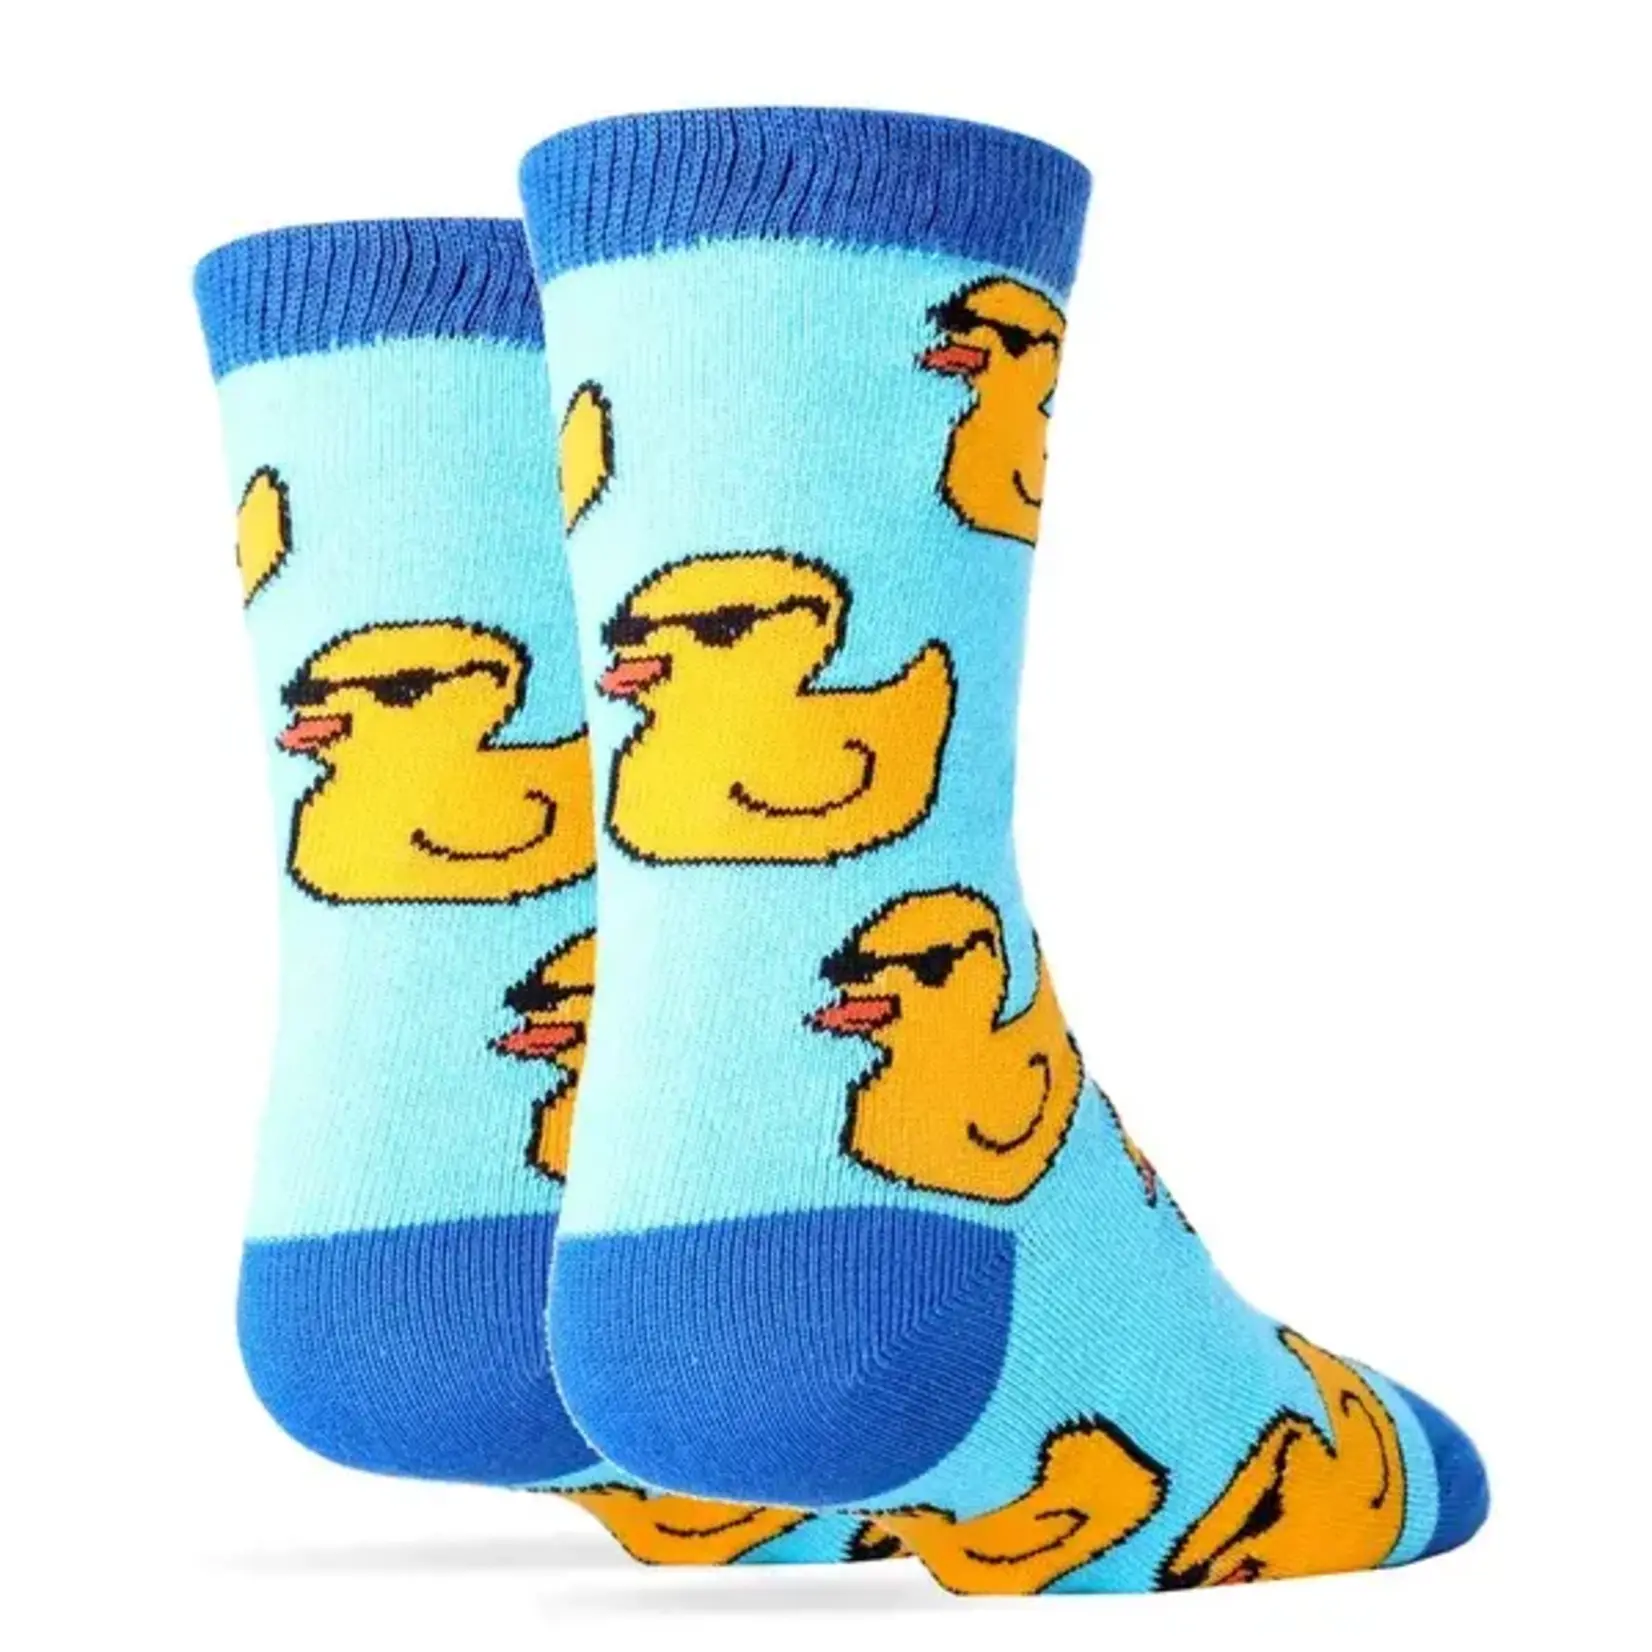 Socks (Kids) - Rubber Duckies